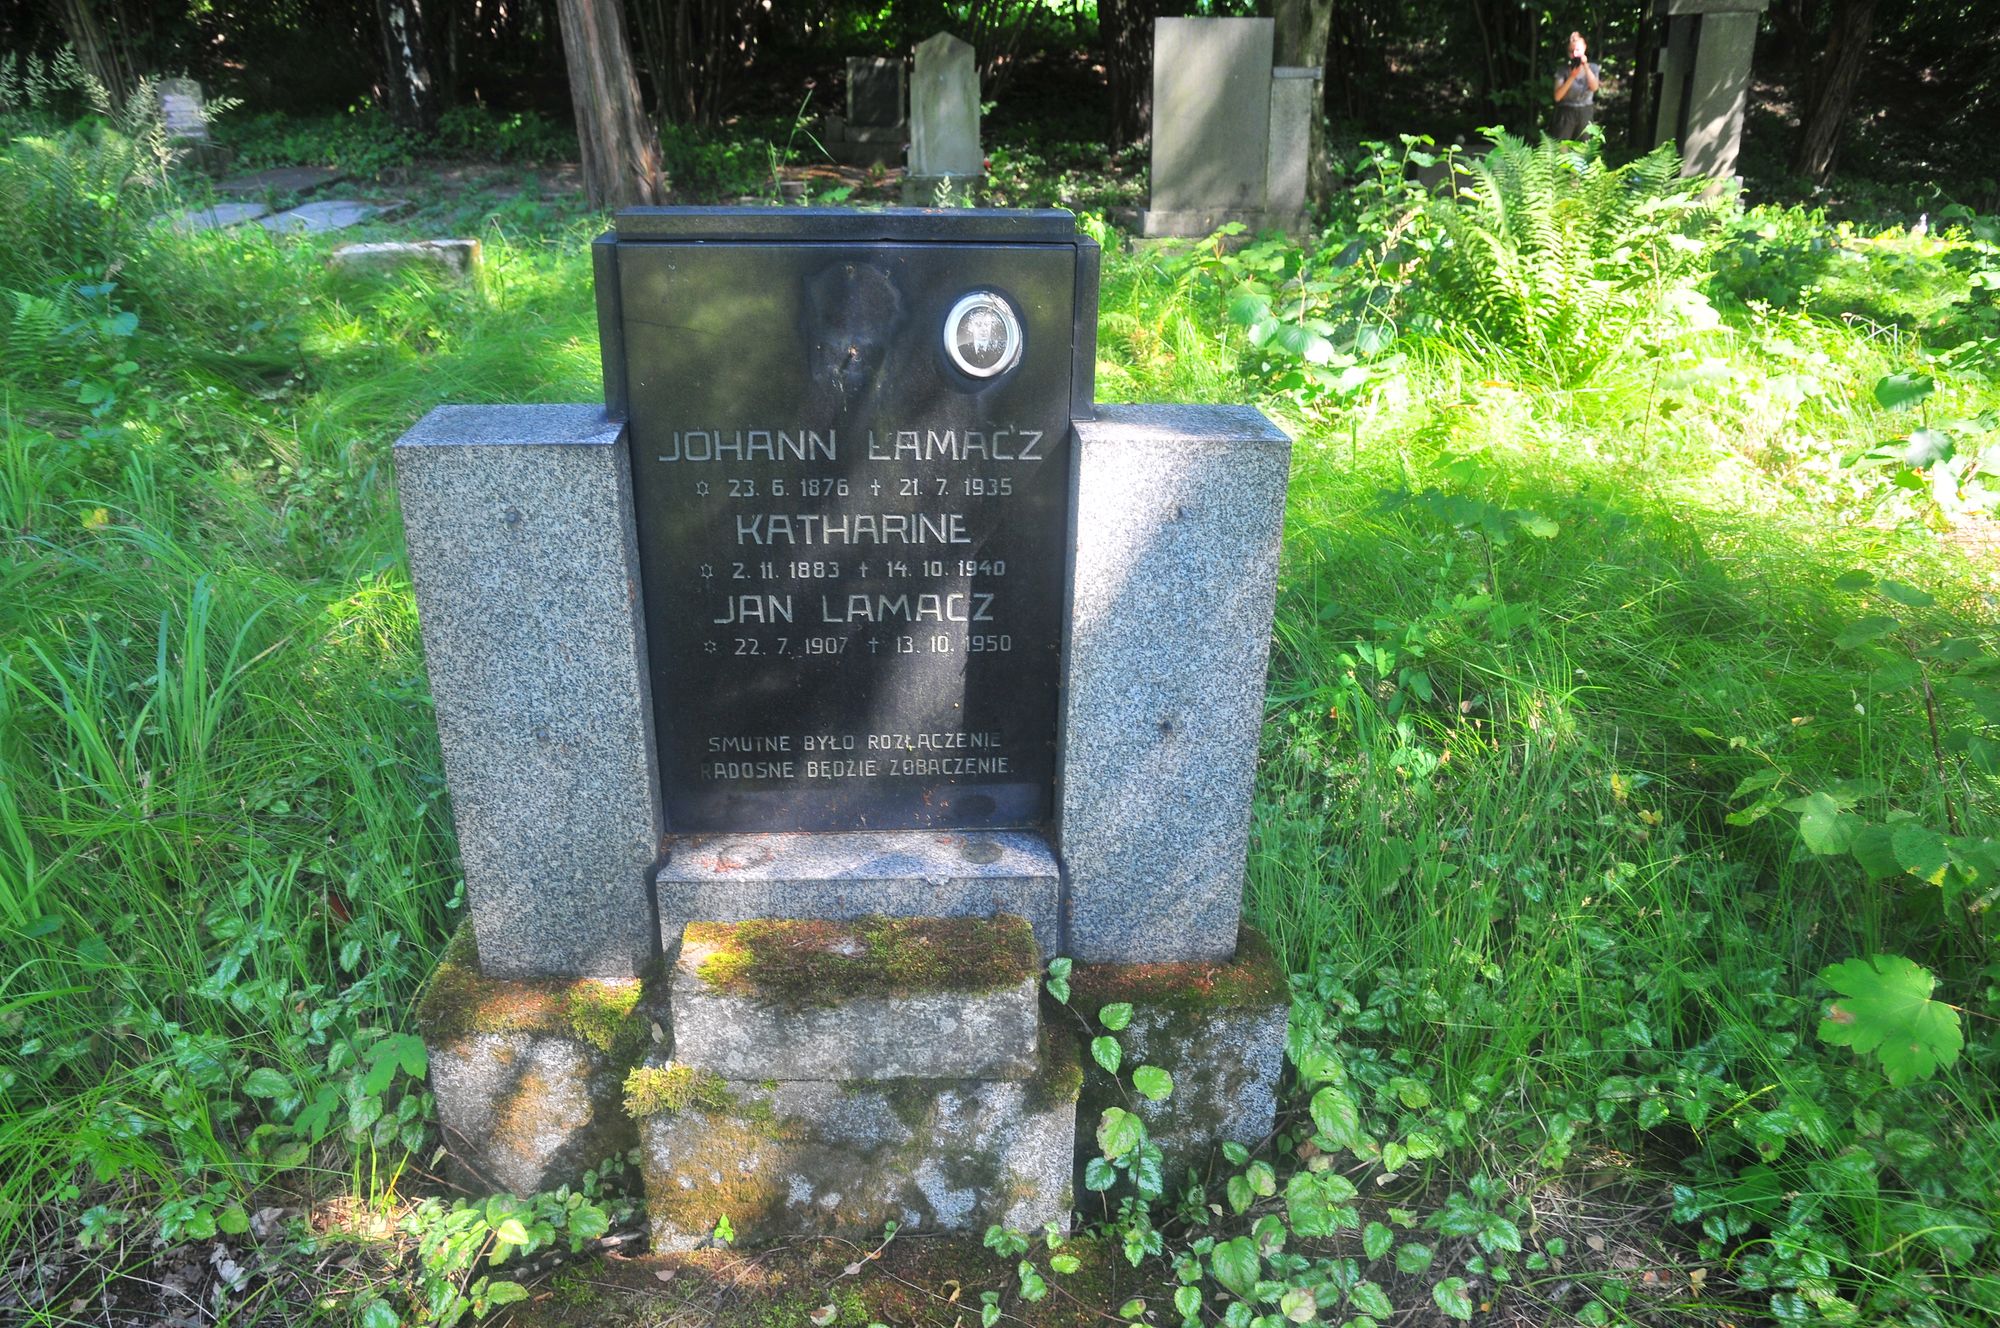 Tombstone of the Łamacz family